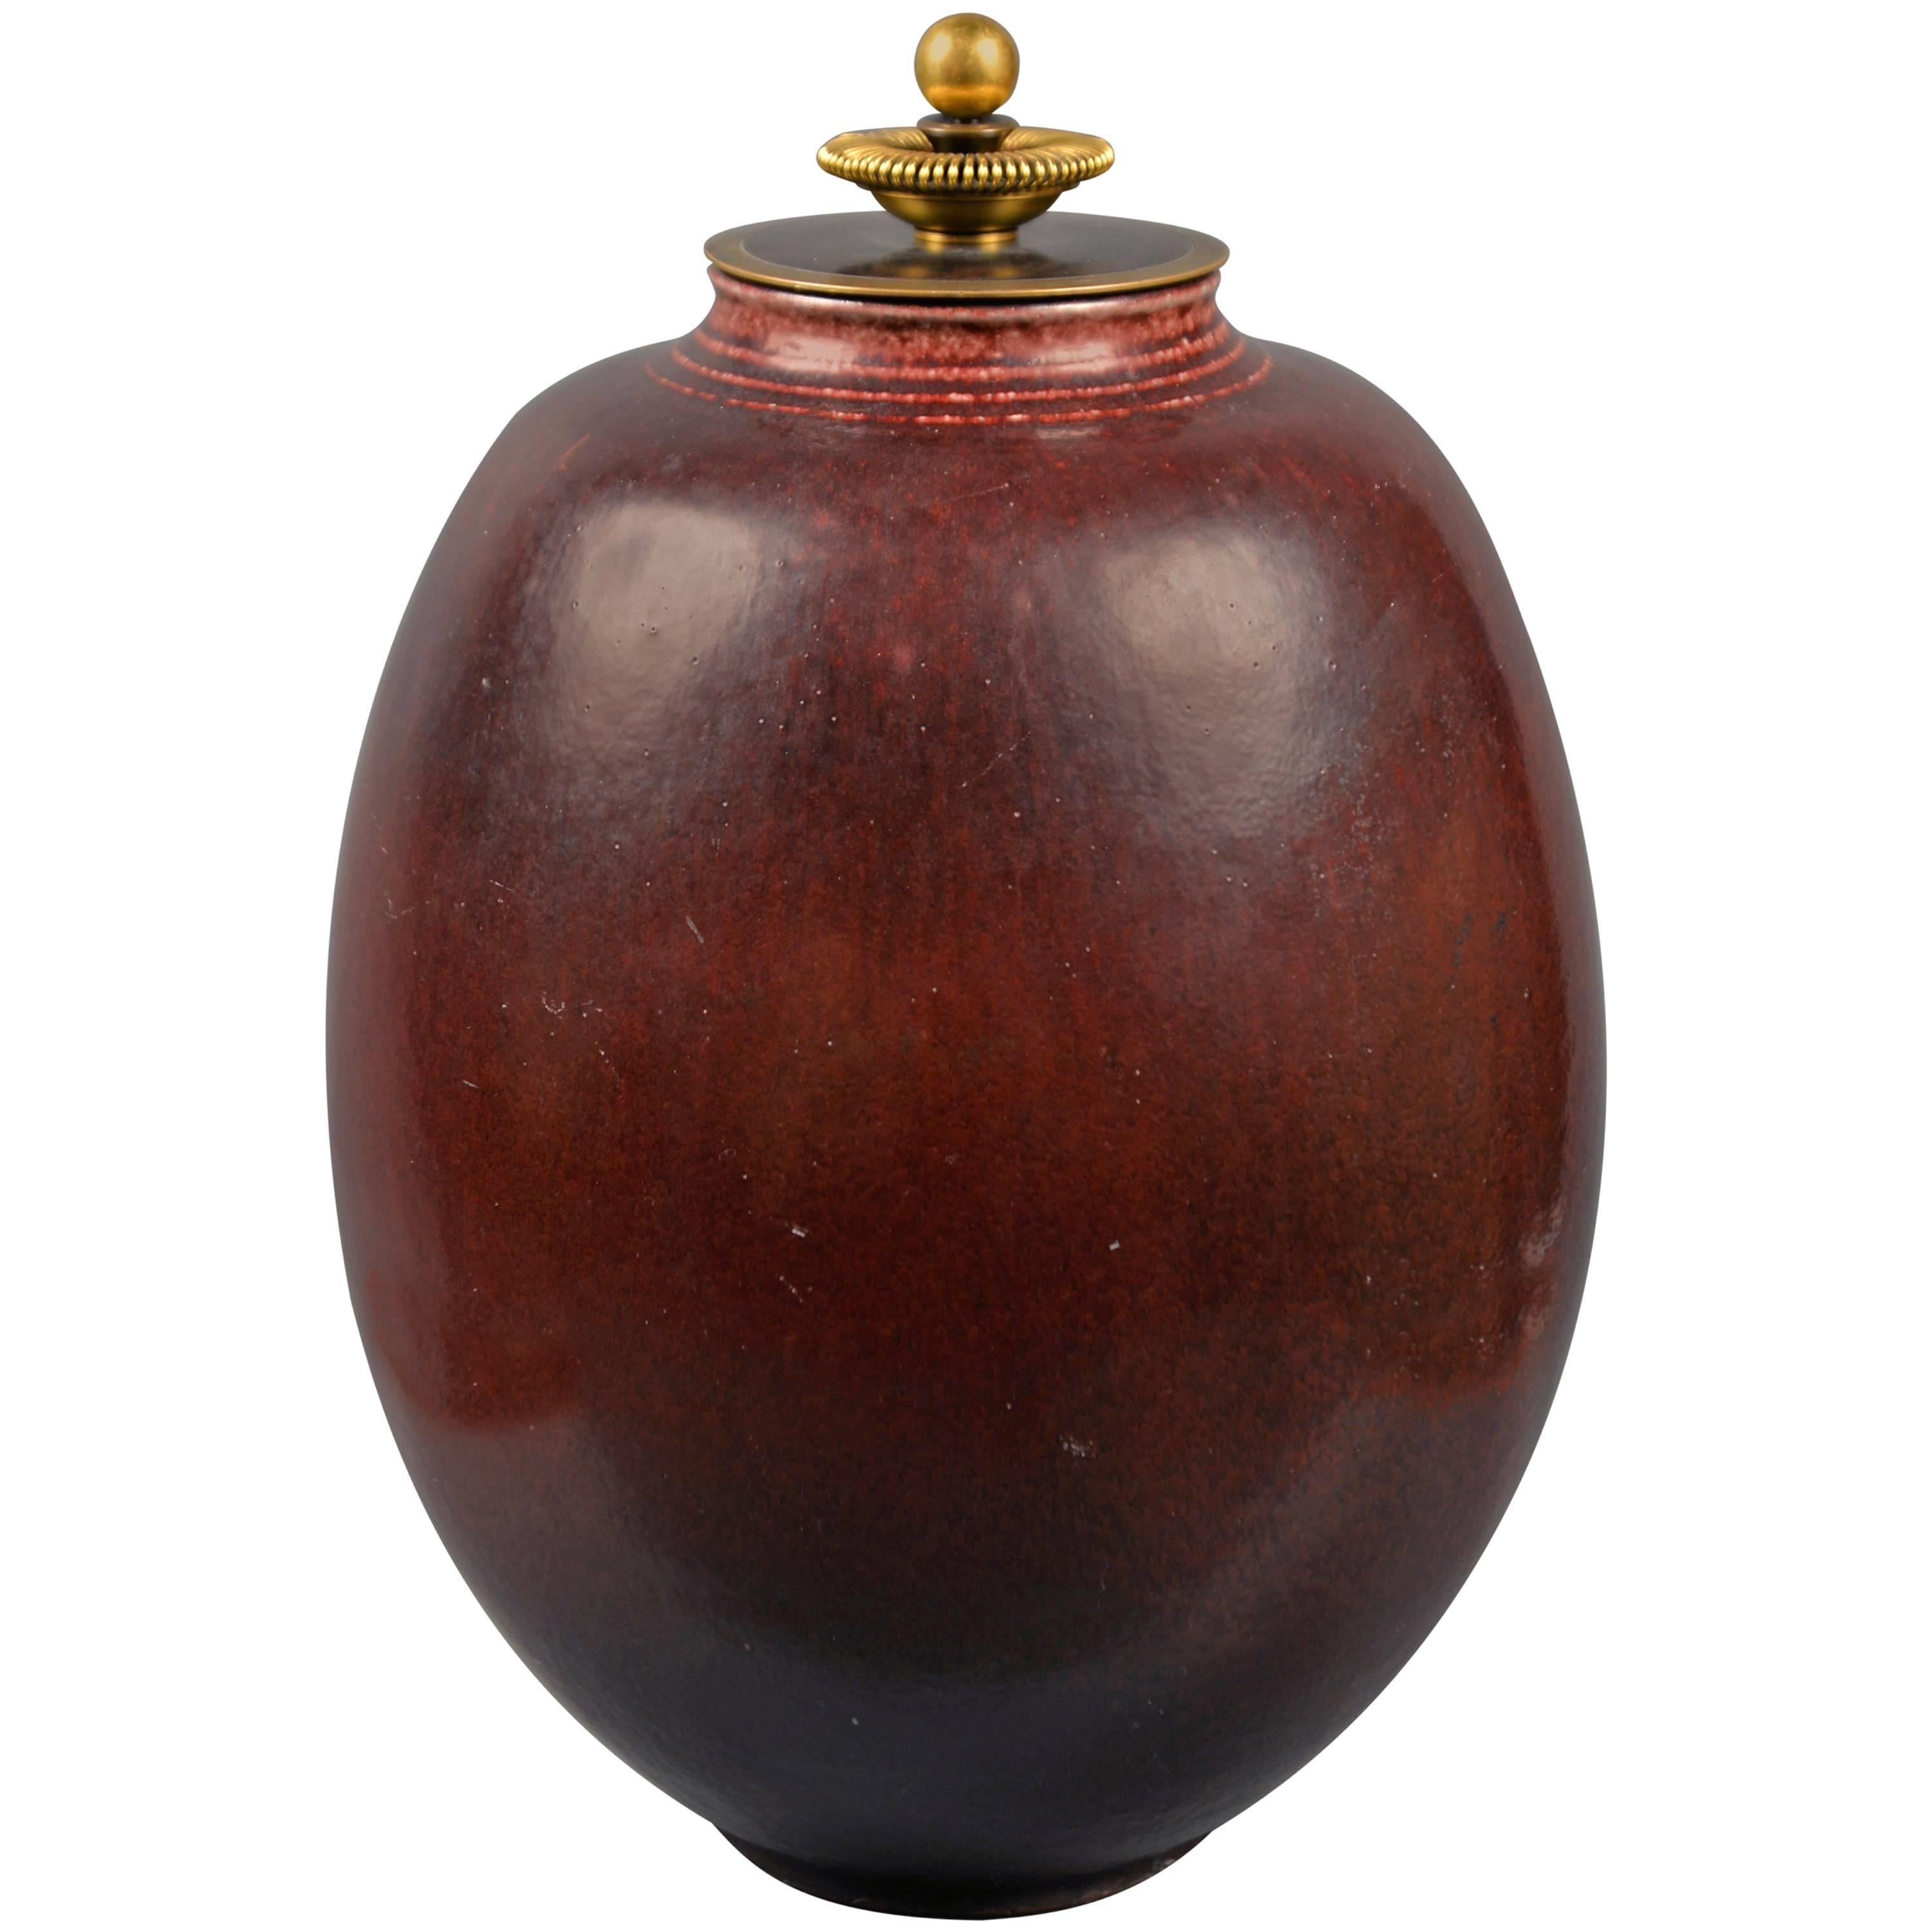 Jar with Lid by Kresten Bloch for Royal Copenhagen, Denmark, 1957